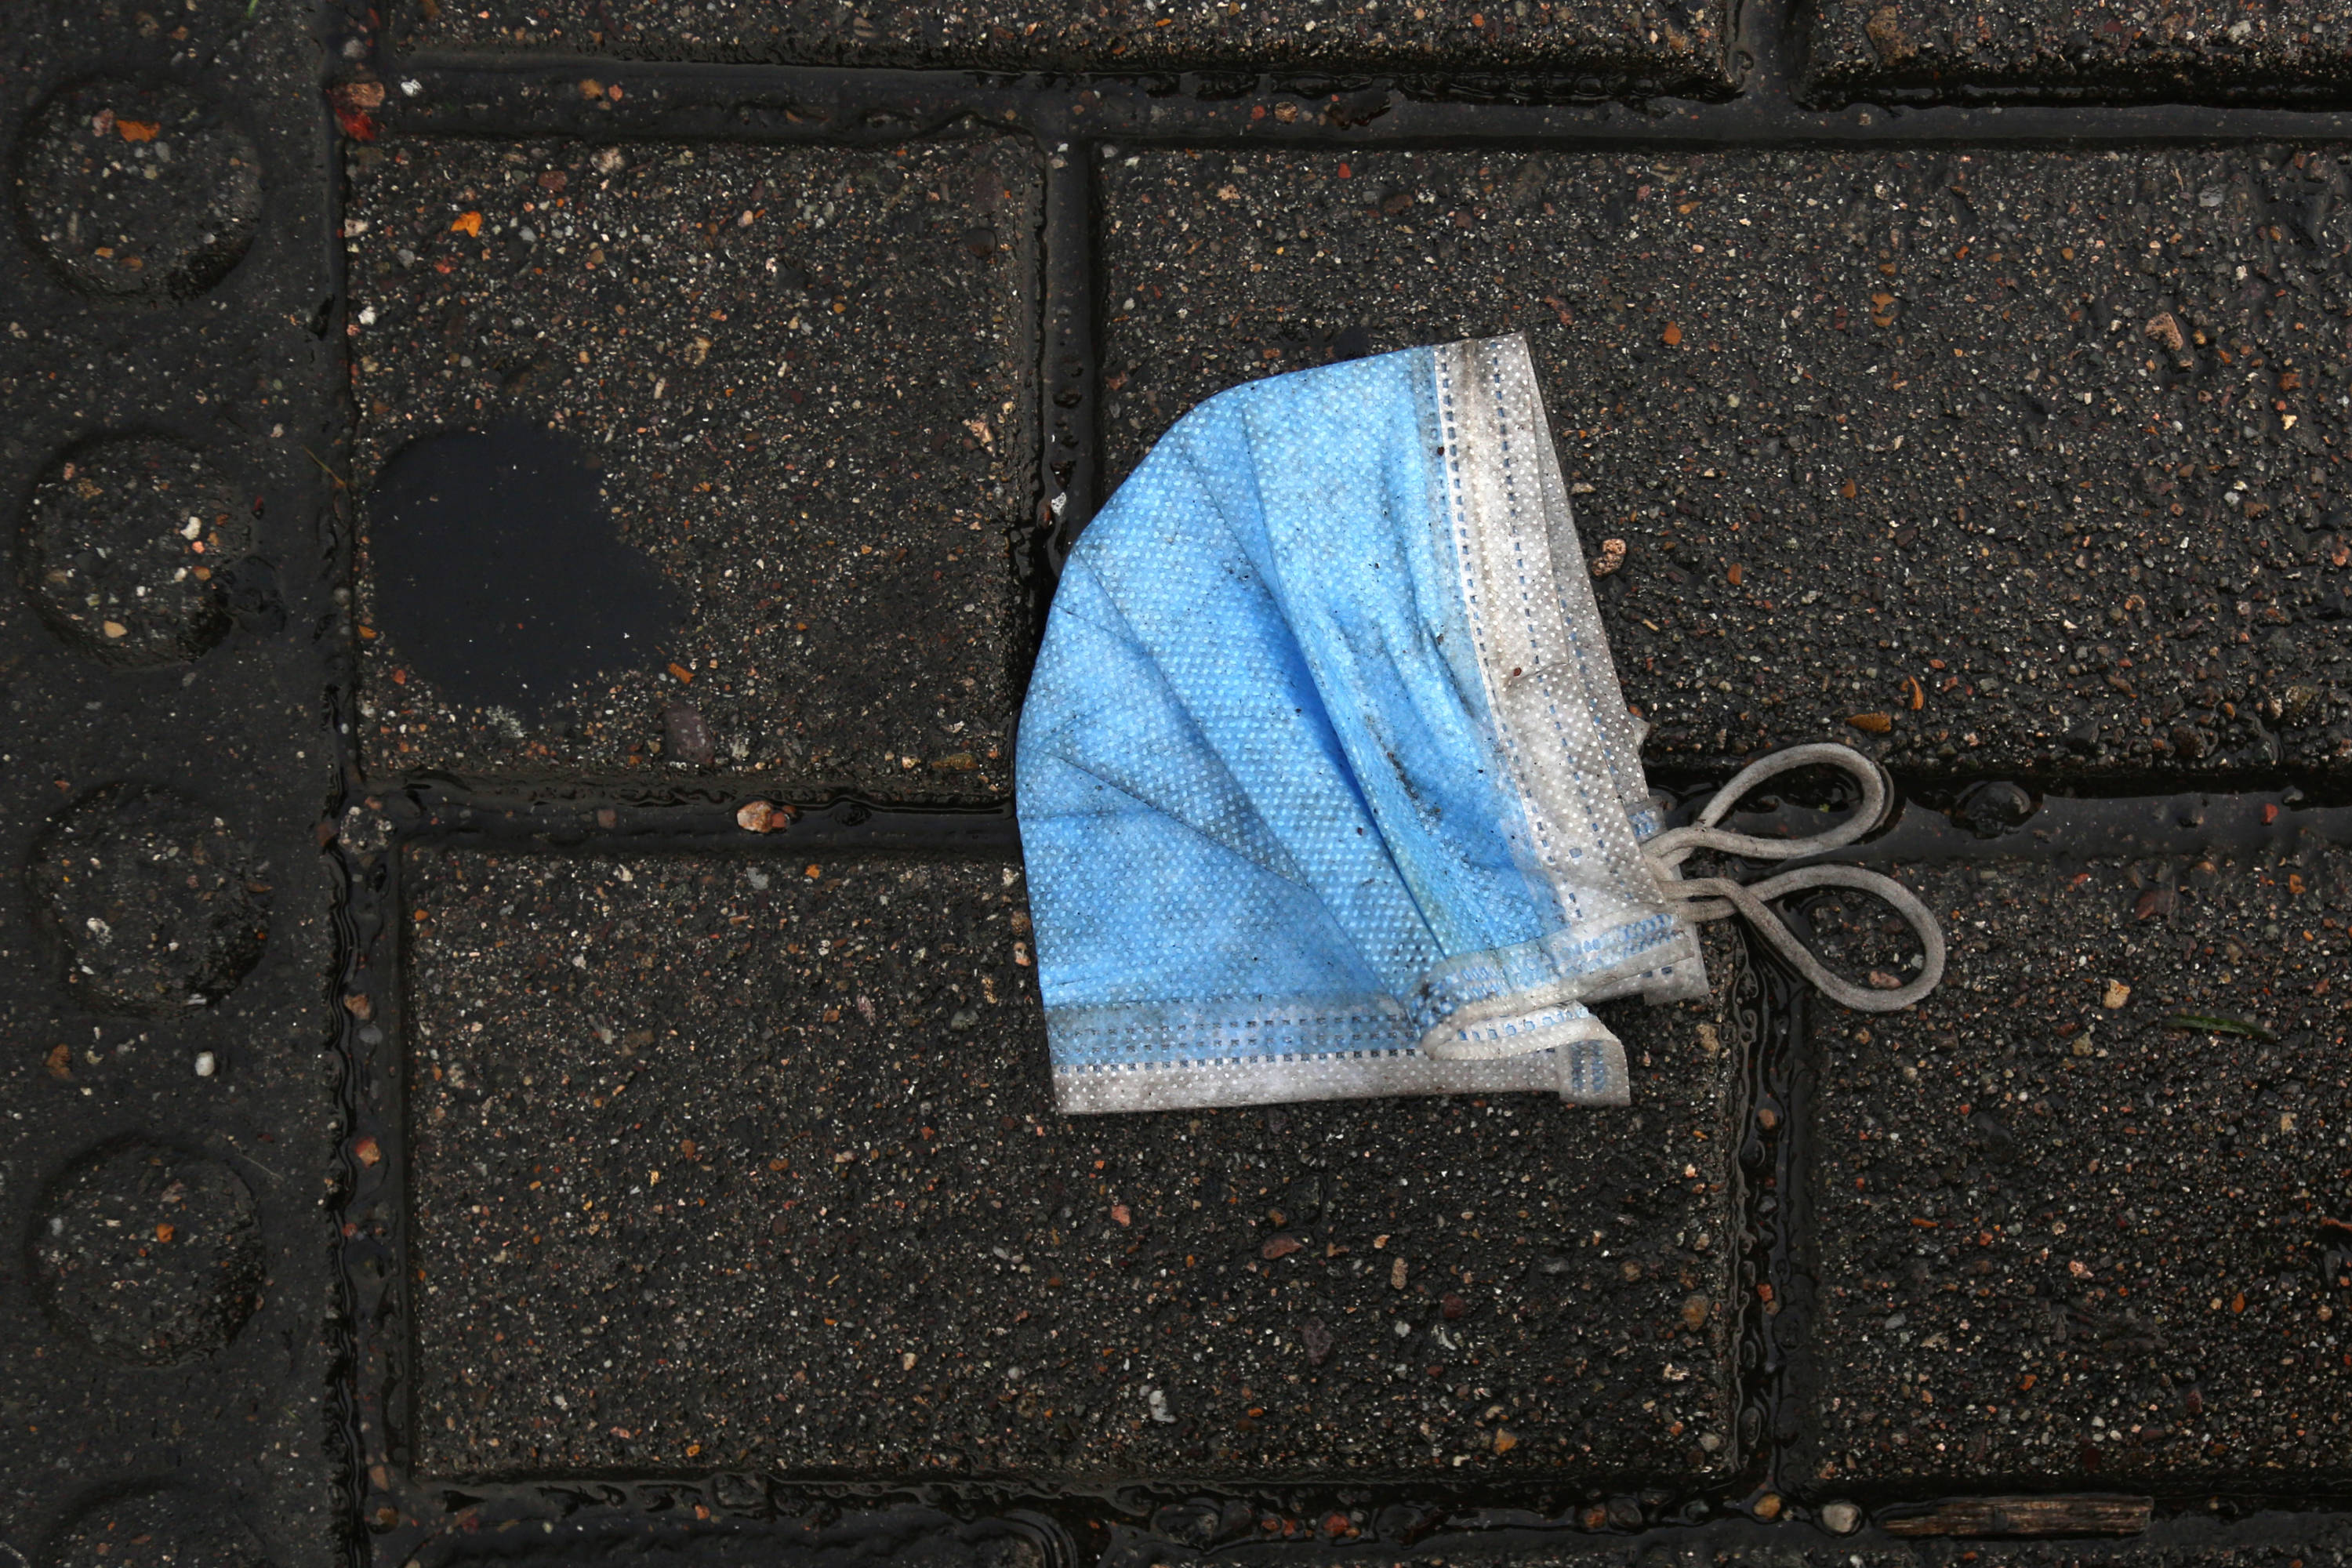 La propuesta de ordenanza pretende sancionar y multar a quienes arrojan tapabocas y guantes a las calles. Foto: Foto: César Melgarejo/CEET